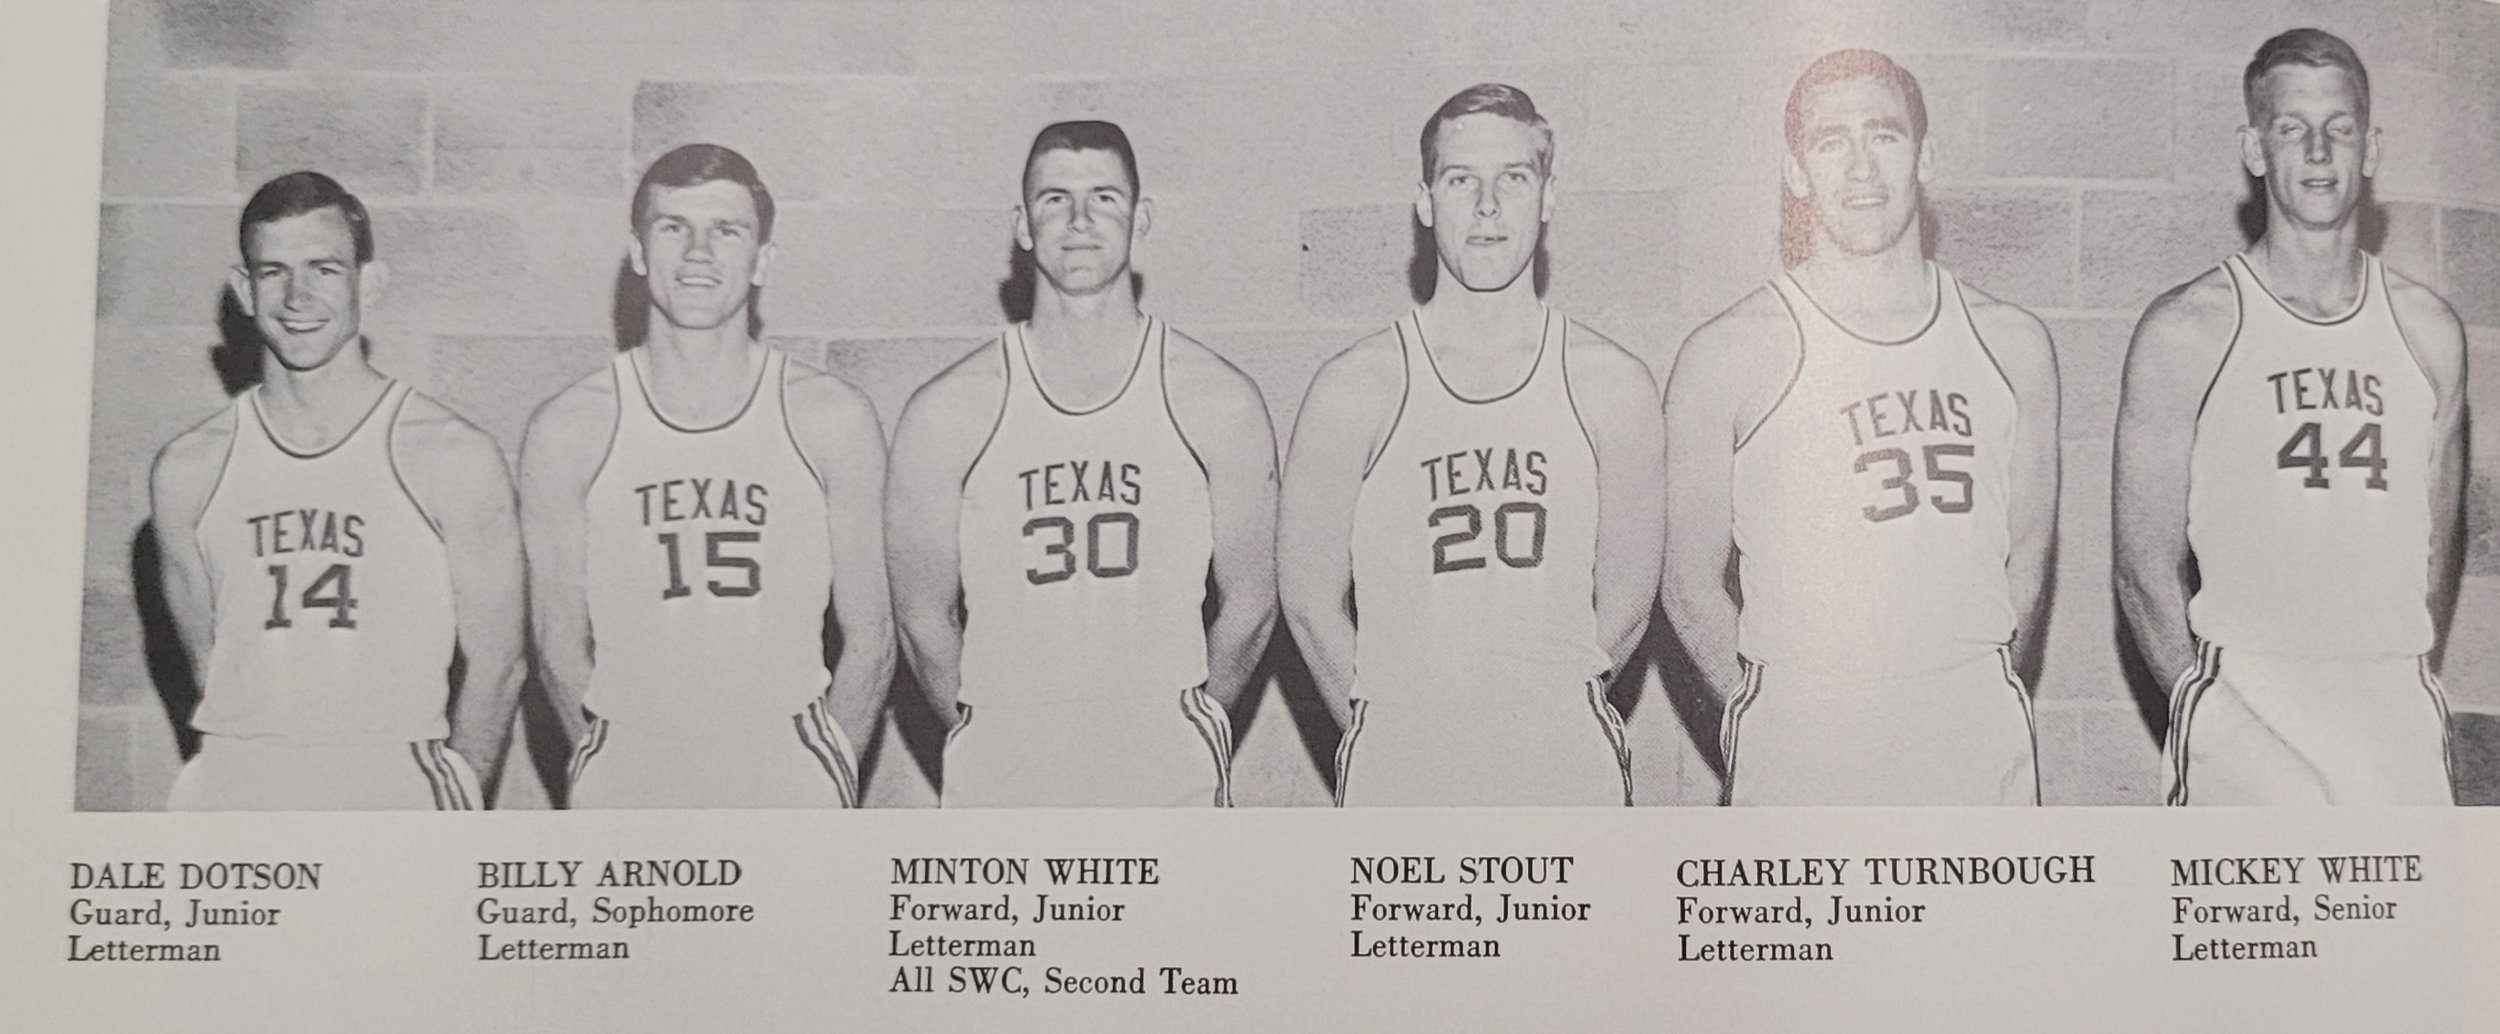  1965 basketball   Dotson, Arnold, Minton White, Stout, Turnbough, Mickey White. 